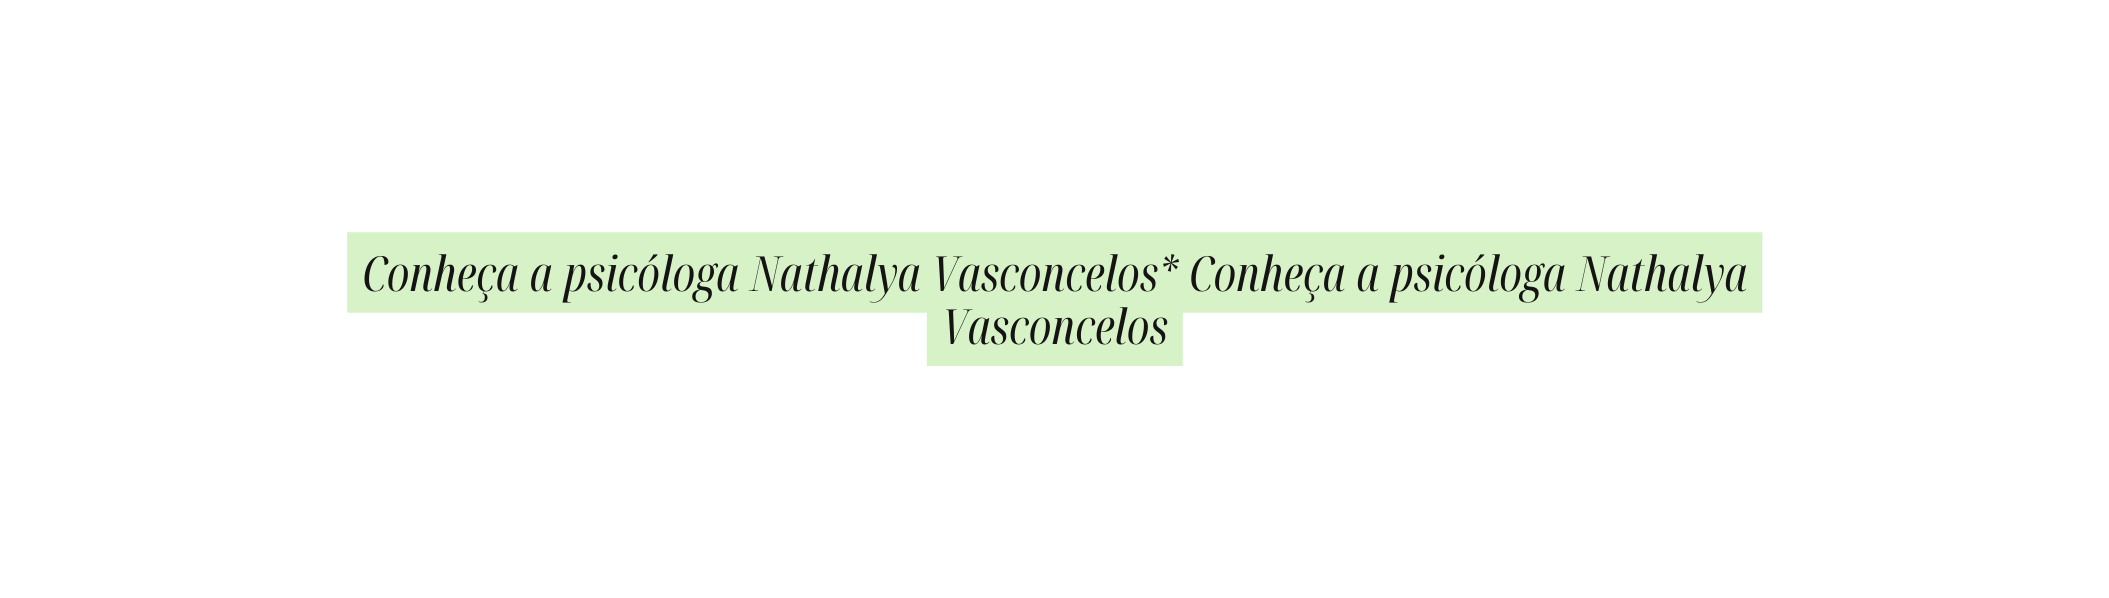 Conheça a psicóloga Nathalya Vasconcelos Conheça a psicóloga Nathalya Vasconcelos